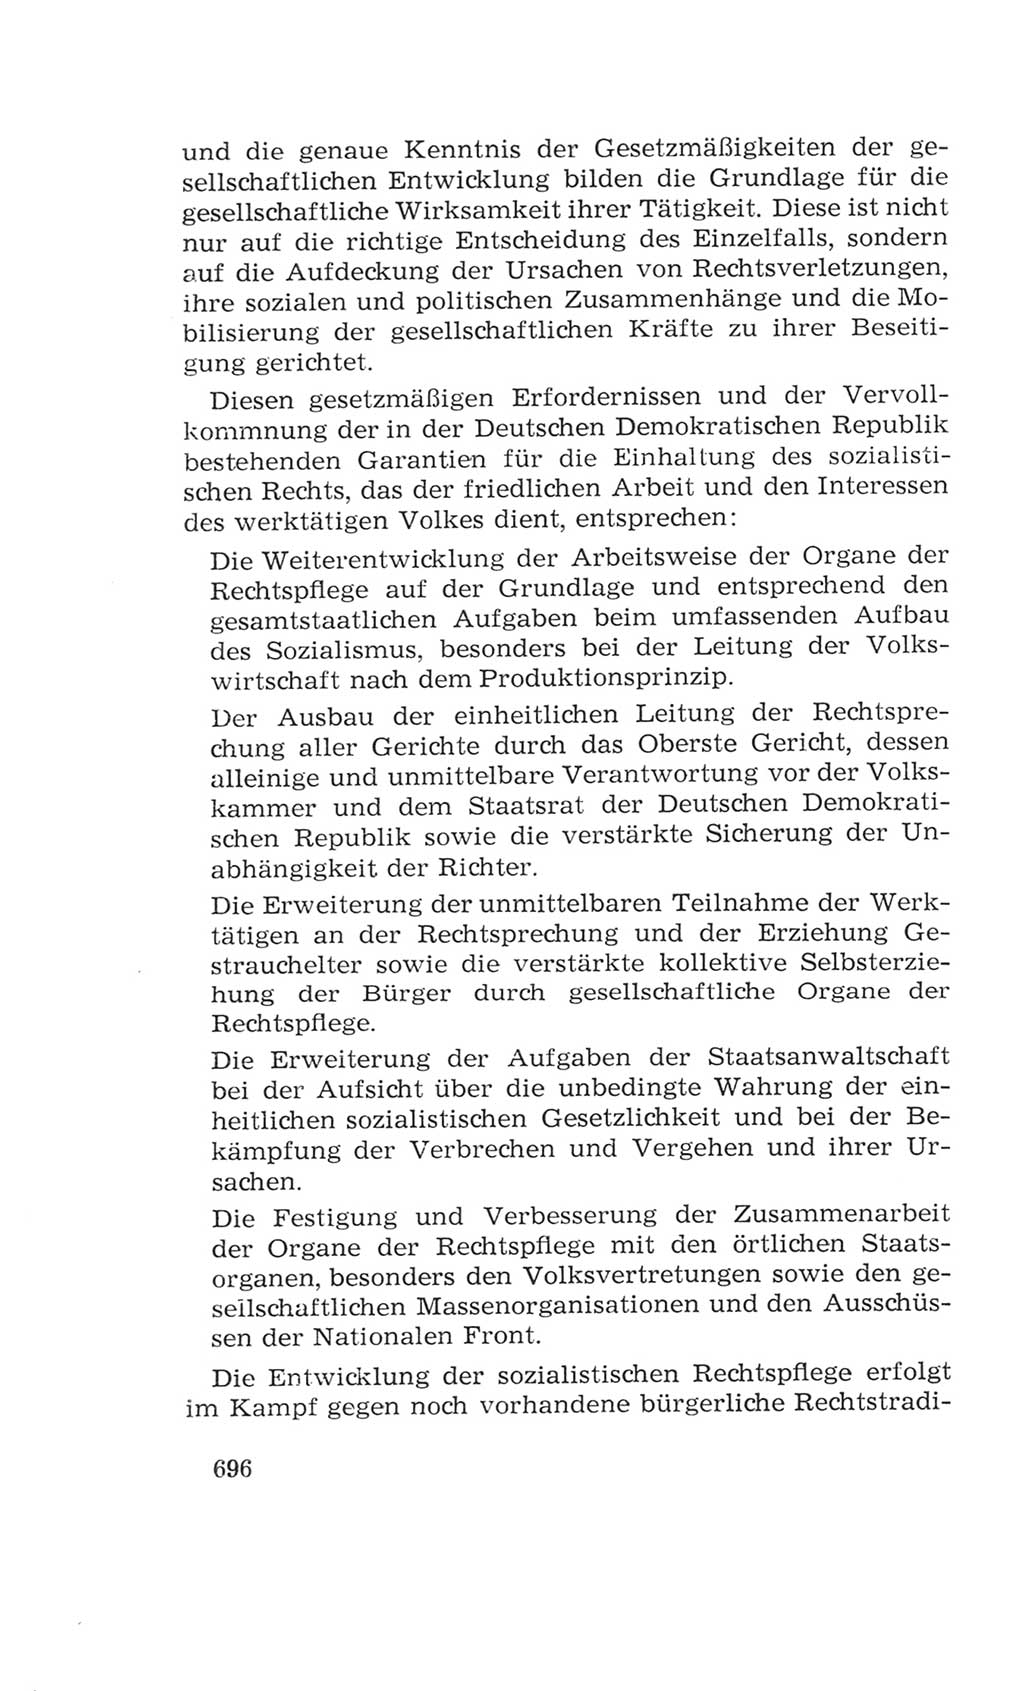 Volkskammer (VK) der Deutschen Demokratischen Republik (DDR), 4. Wahlperiode 1963-1967, Seite 696 (VK. DDR 4. WP. 1963-1967, S. 696)